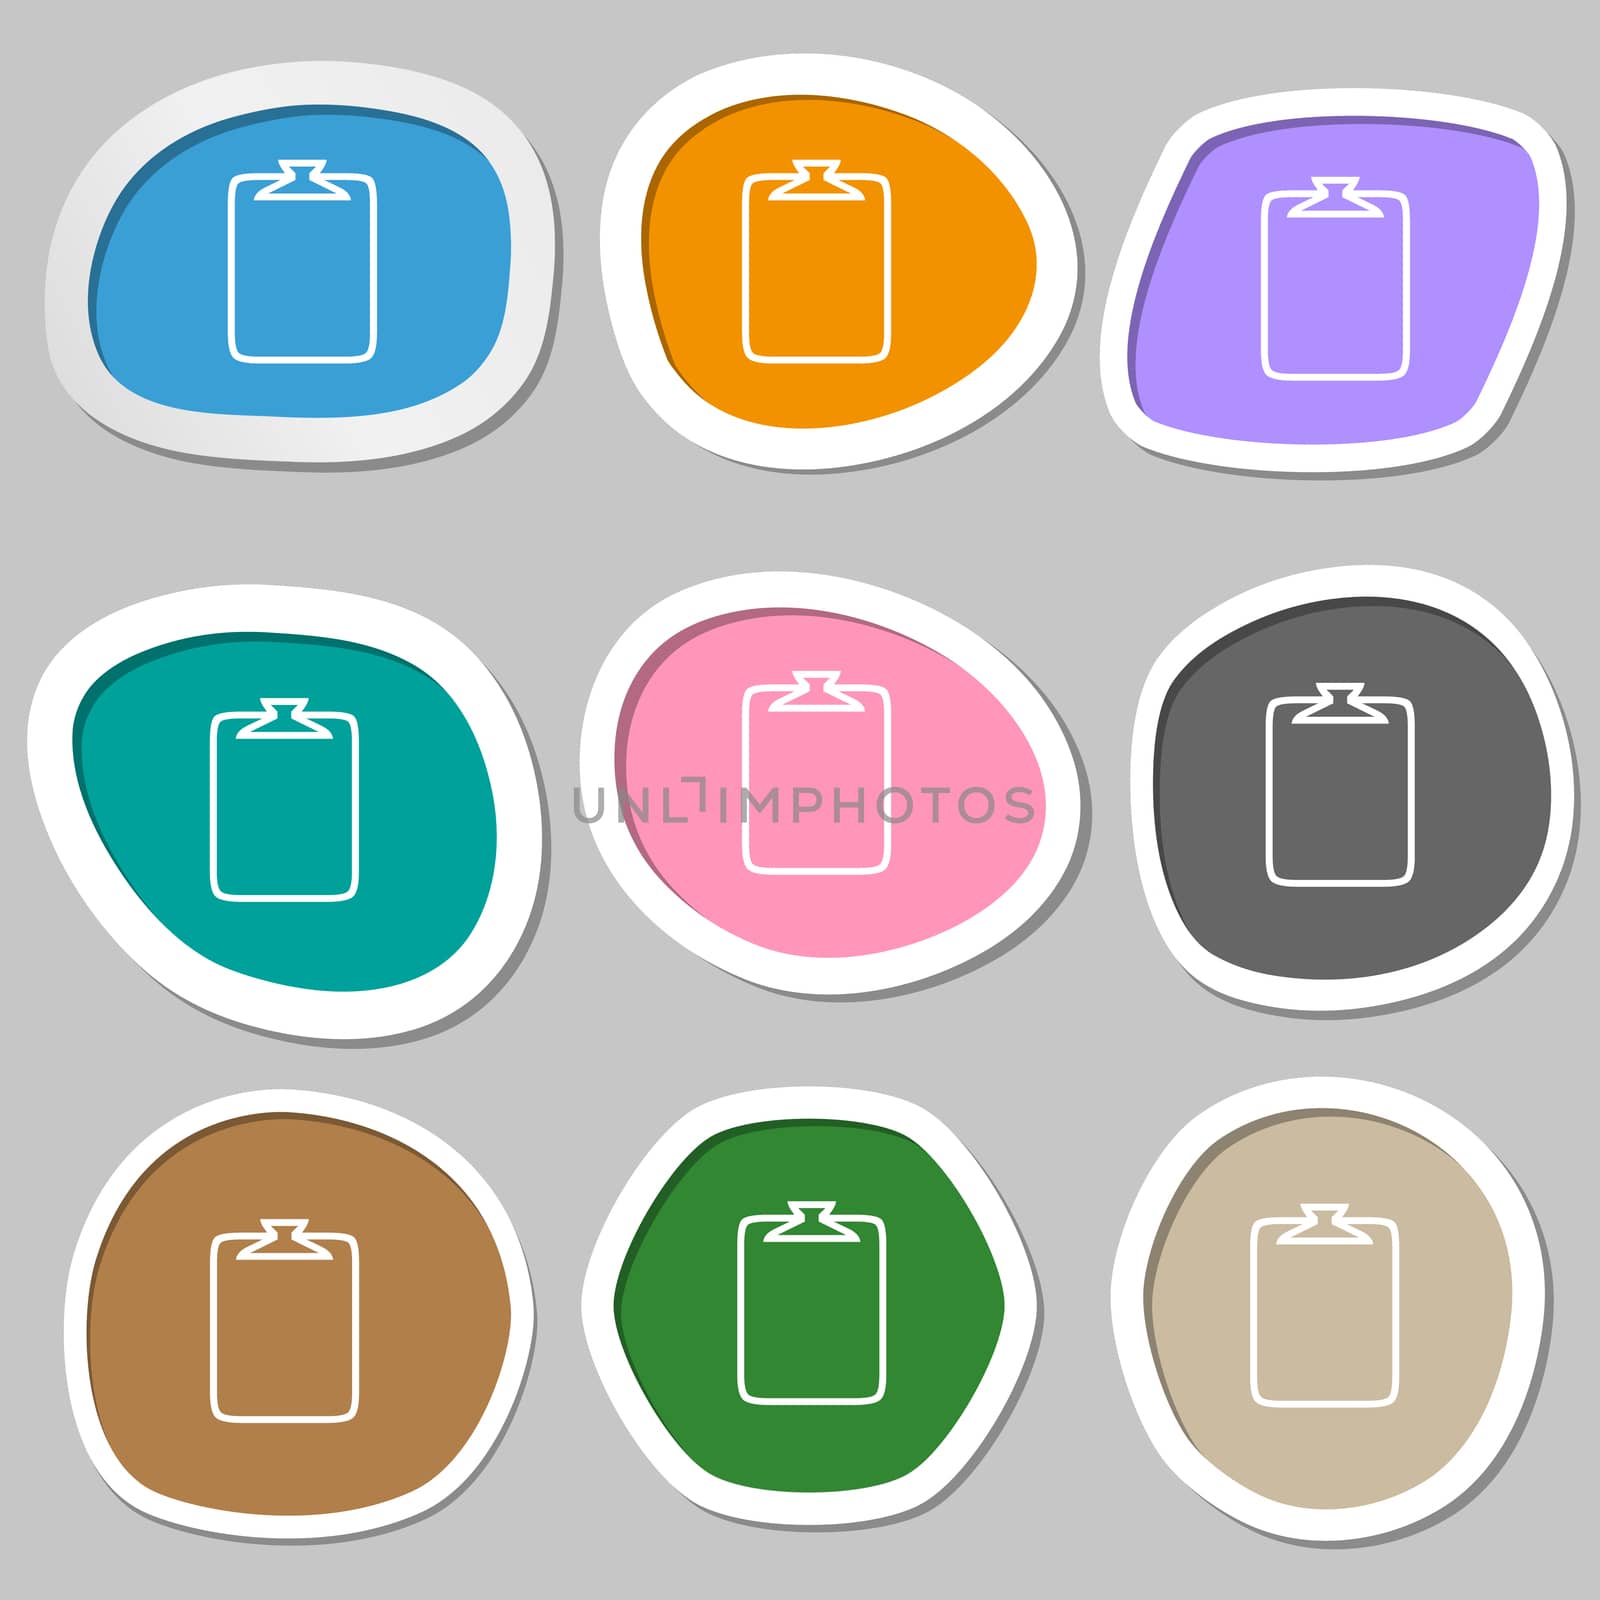 File annex icon. Paper clip symbol. Attach sign. Multicolored paper stickers. illustration